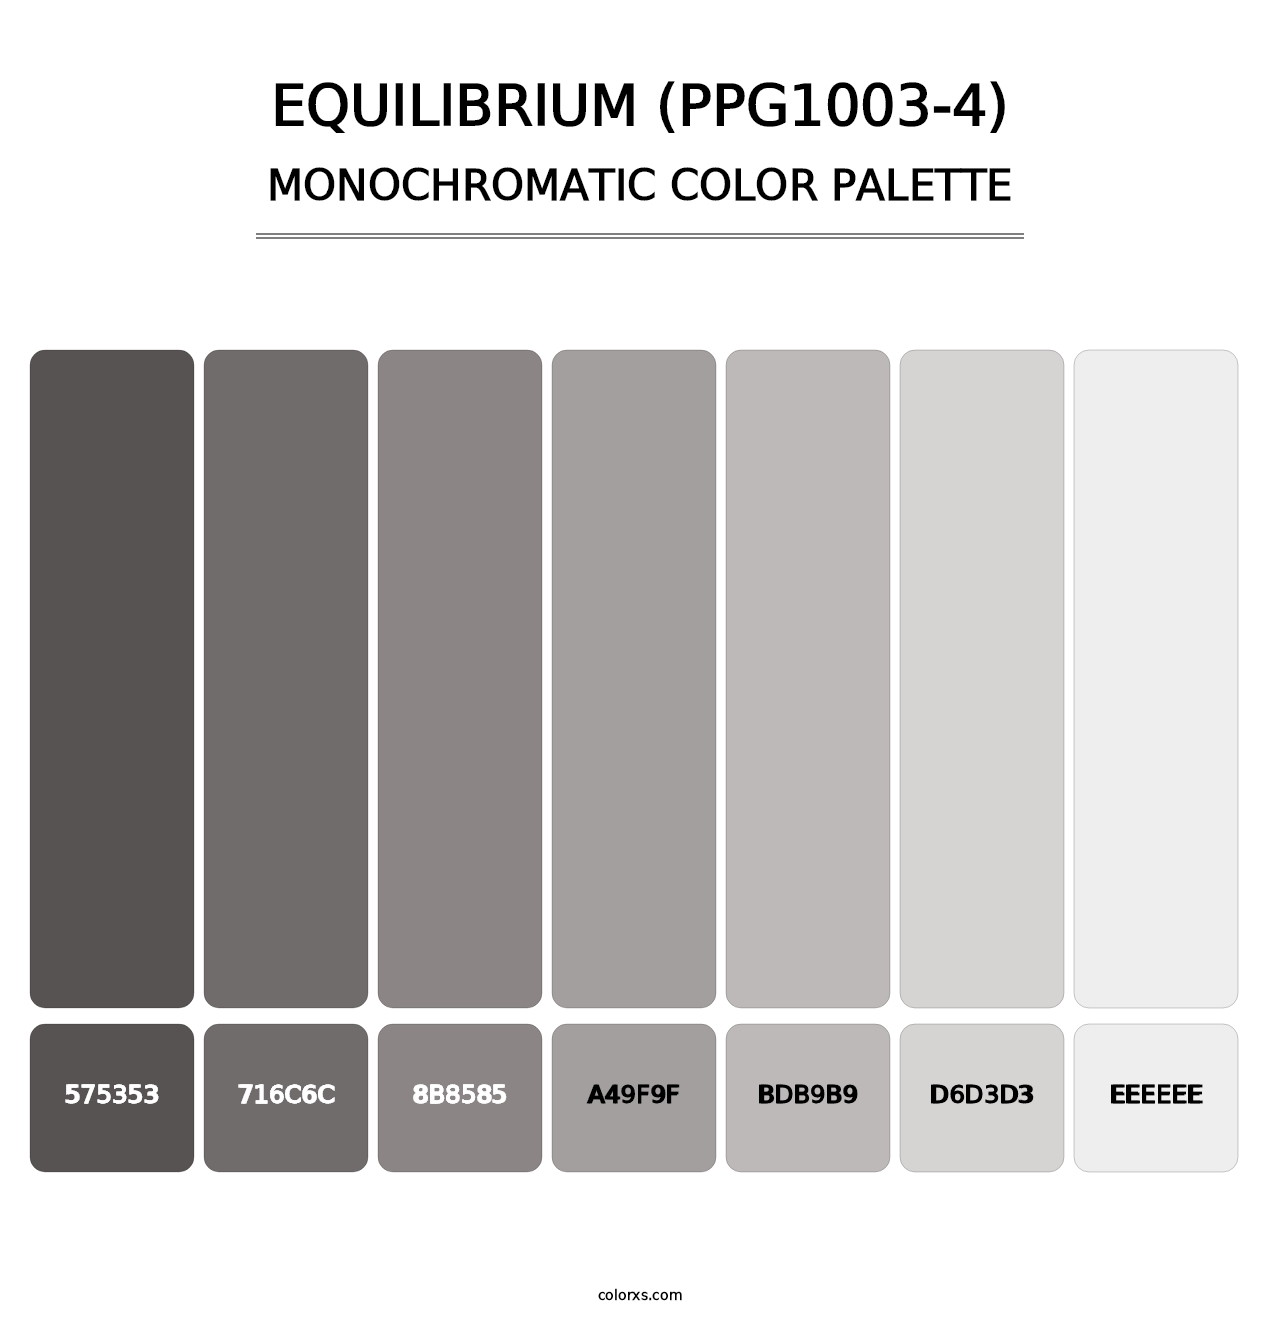 Equilibrium (PPG1003-4) - Monochromatic Color Palette